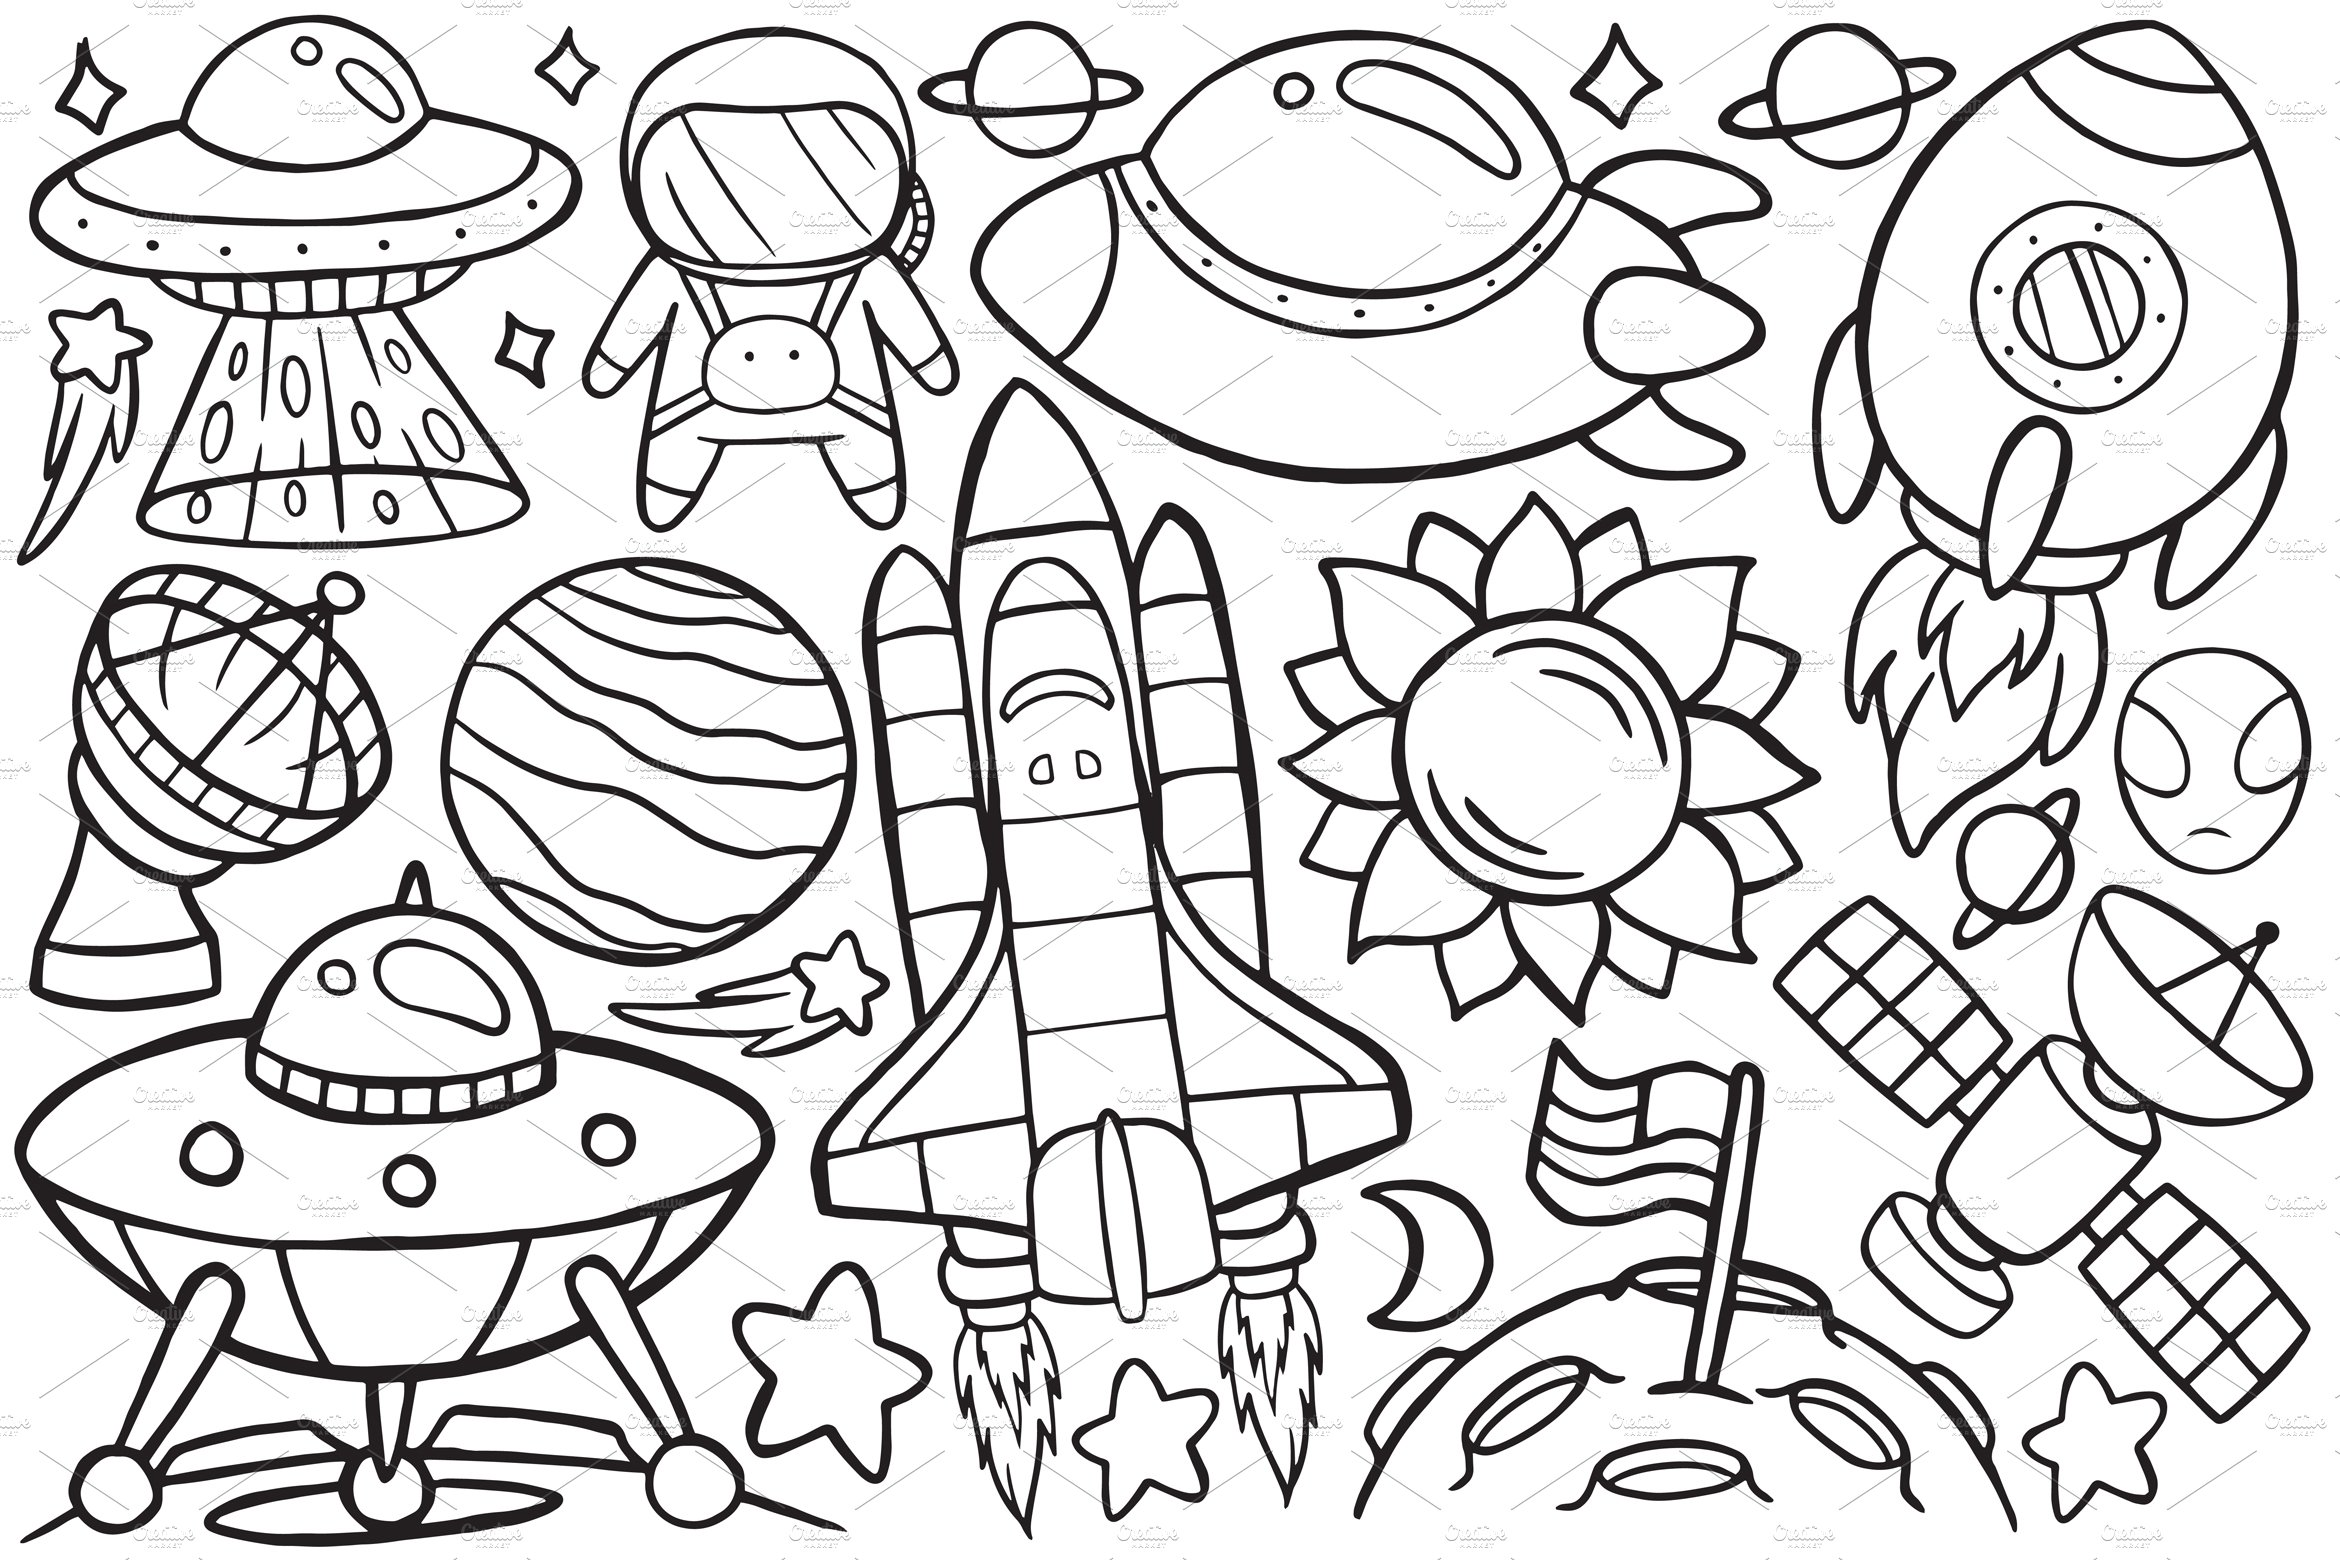 c space 2 doodle 247